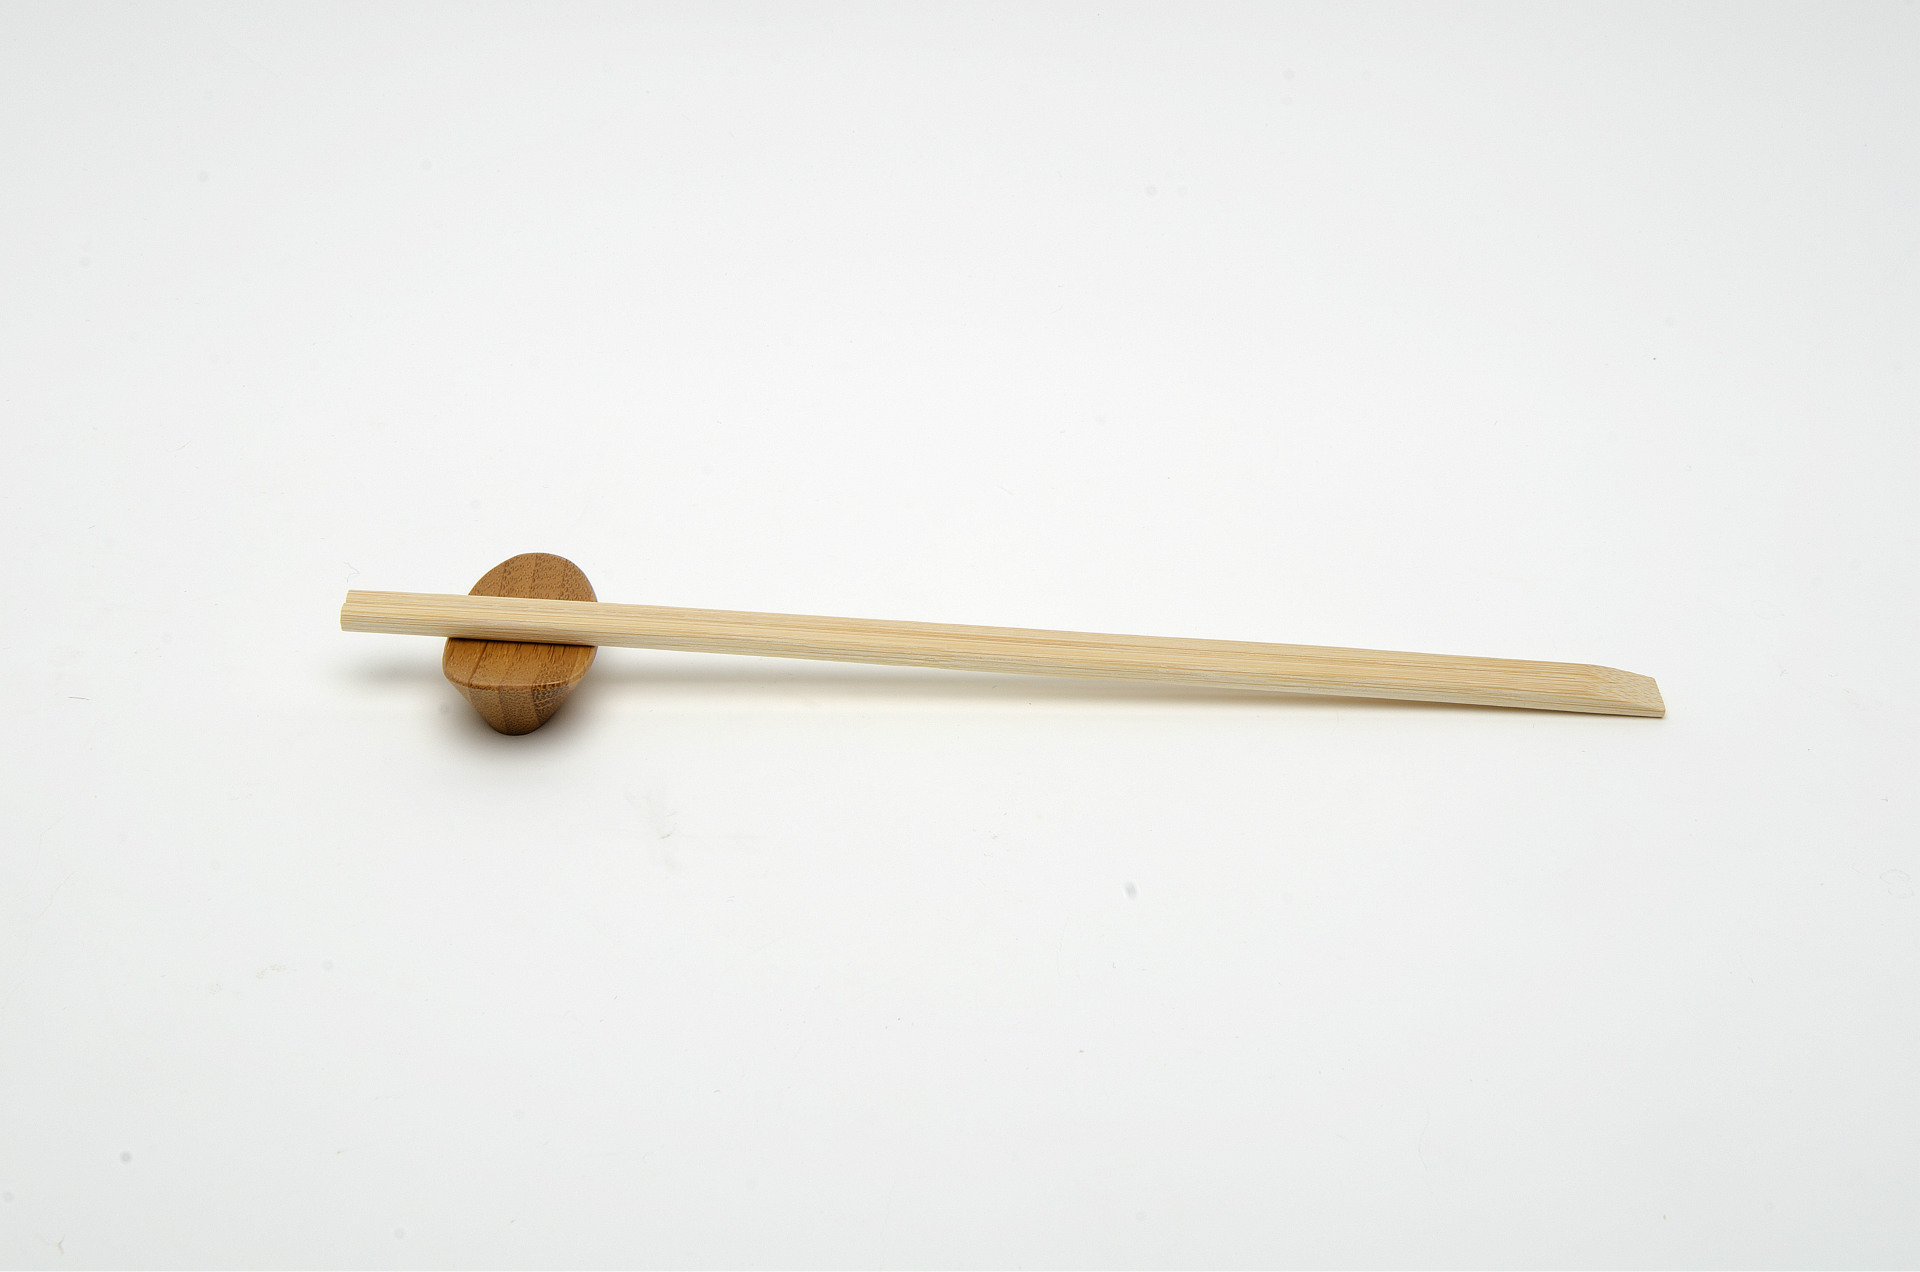 Tek kullanımlık Bireysel Sarılmış Ahşap Chopsticks satın al,Tek kullanımlık Bireysel Sarılmış Ahşap Chopsticks Fiyatlar,Tek kullanımlık Bireysel Sarılmış Ahşap Chopsticks Markalar,Tek kullanımlık Bireysel Sarılmış Ahşap Chopsticks Üretici,Tek kullanımlık Bireysel Sarılmış Ahşap Chopsticks Alıntılar,Tek kullanımlık Bireysel Sarılmış Ahşap Chopsticks Şirket,